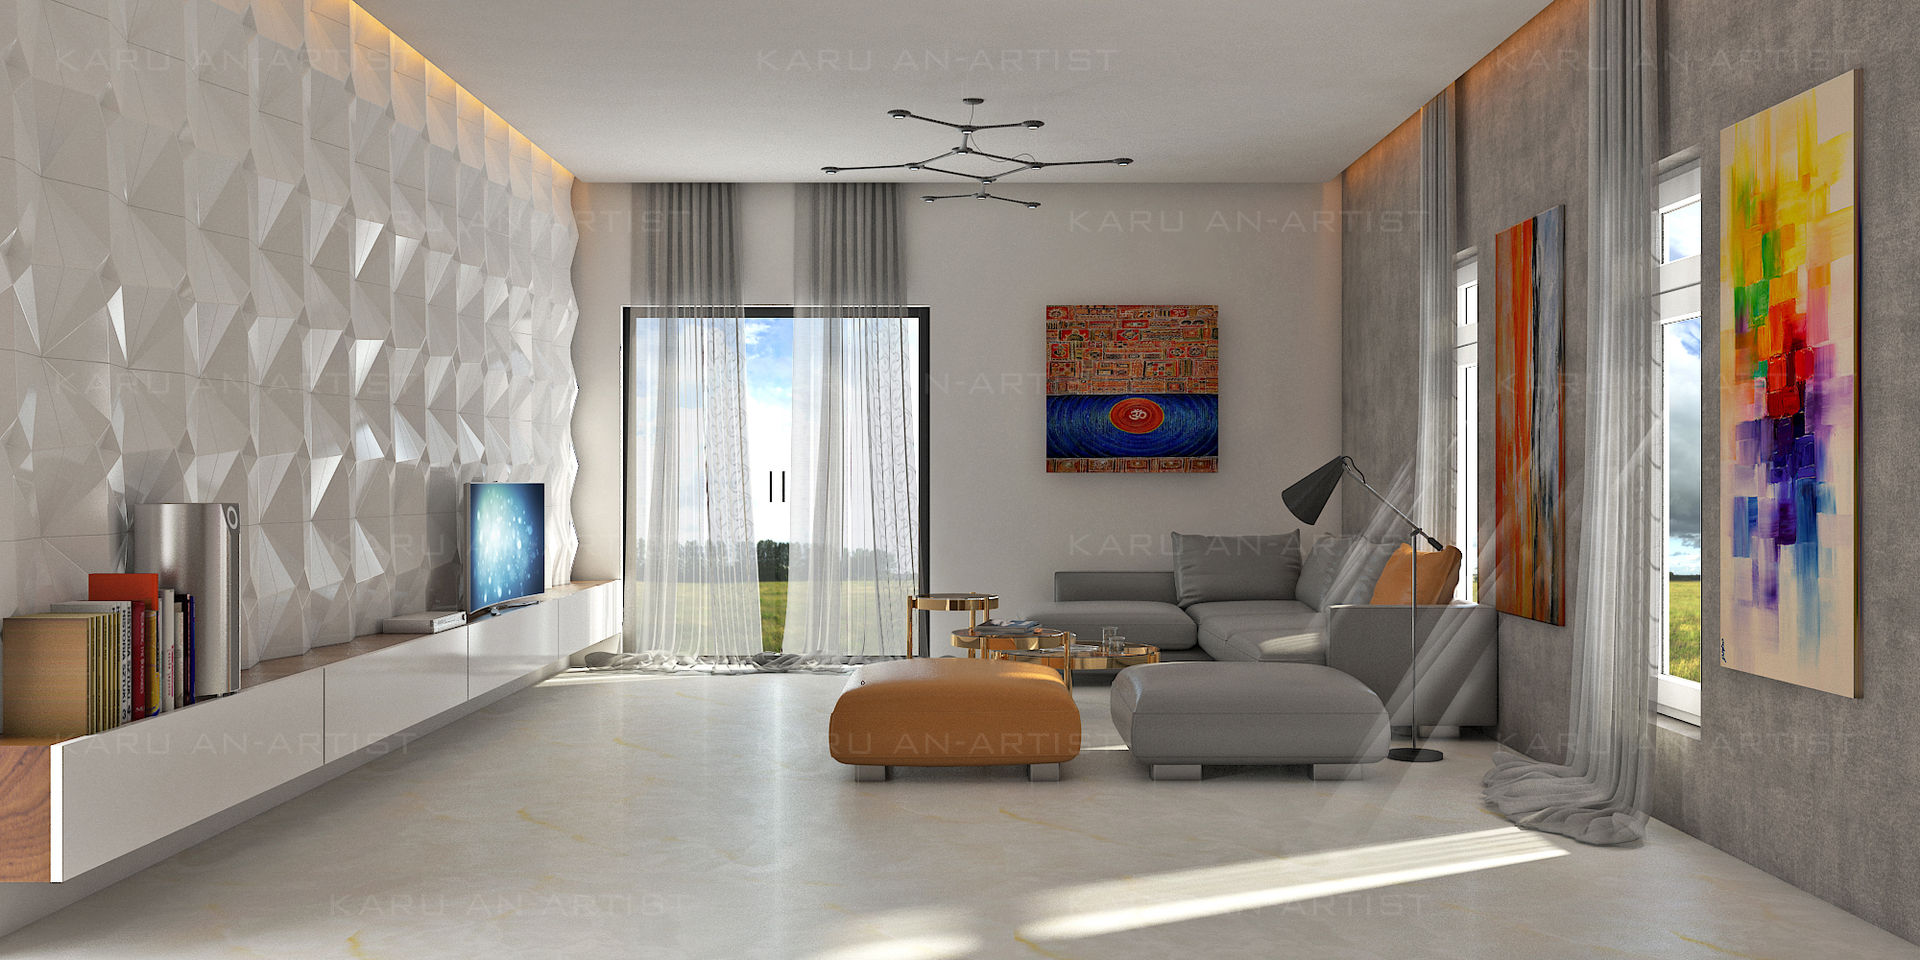 A Modern Living Room, KARU AN ARTIST KARU AN ARTIST Modern living room